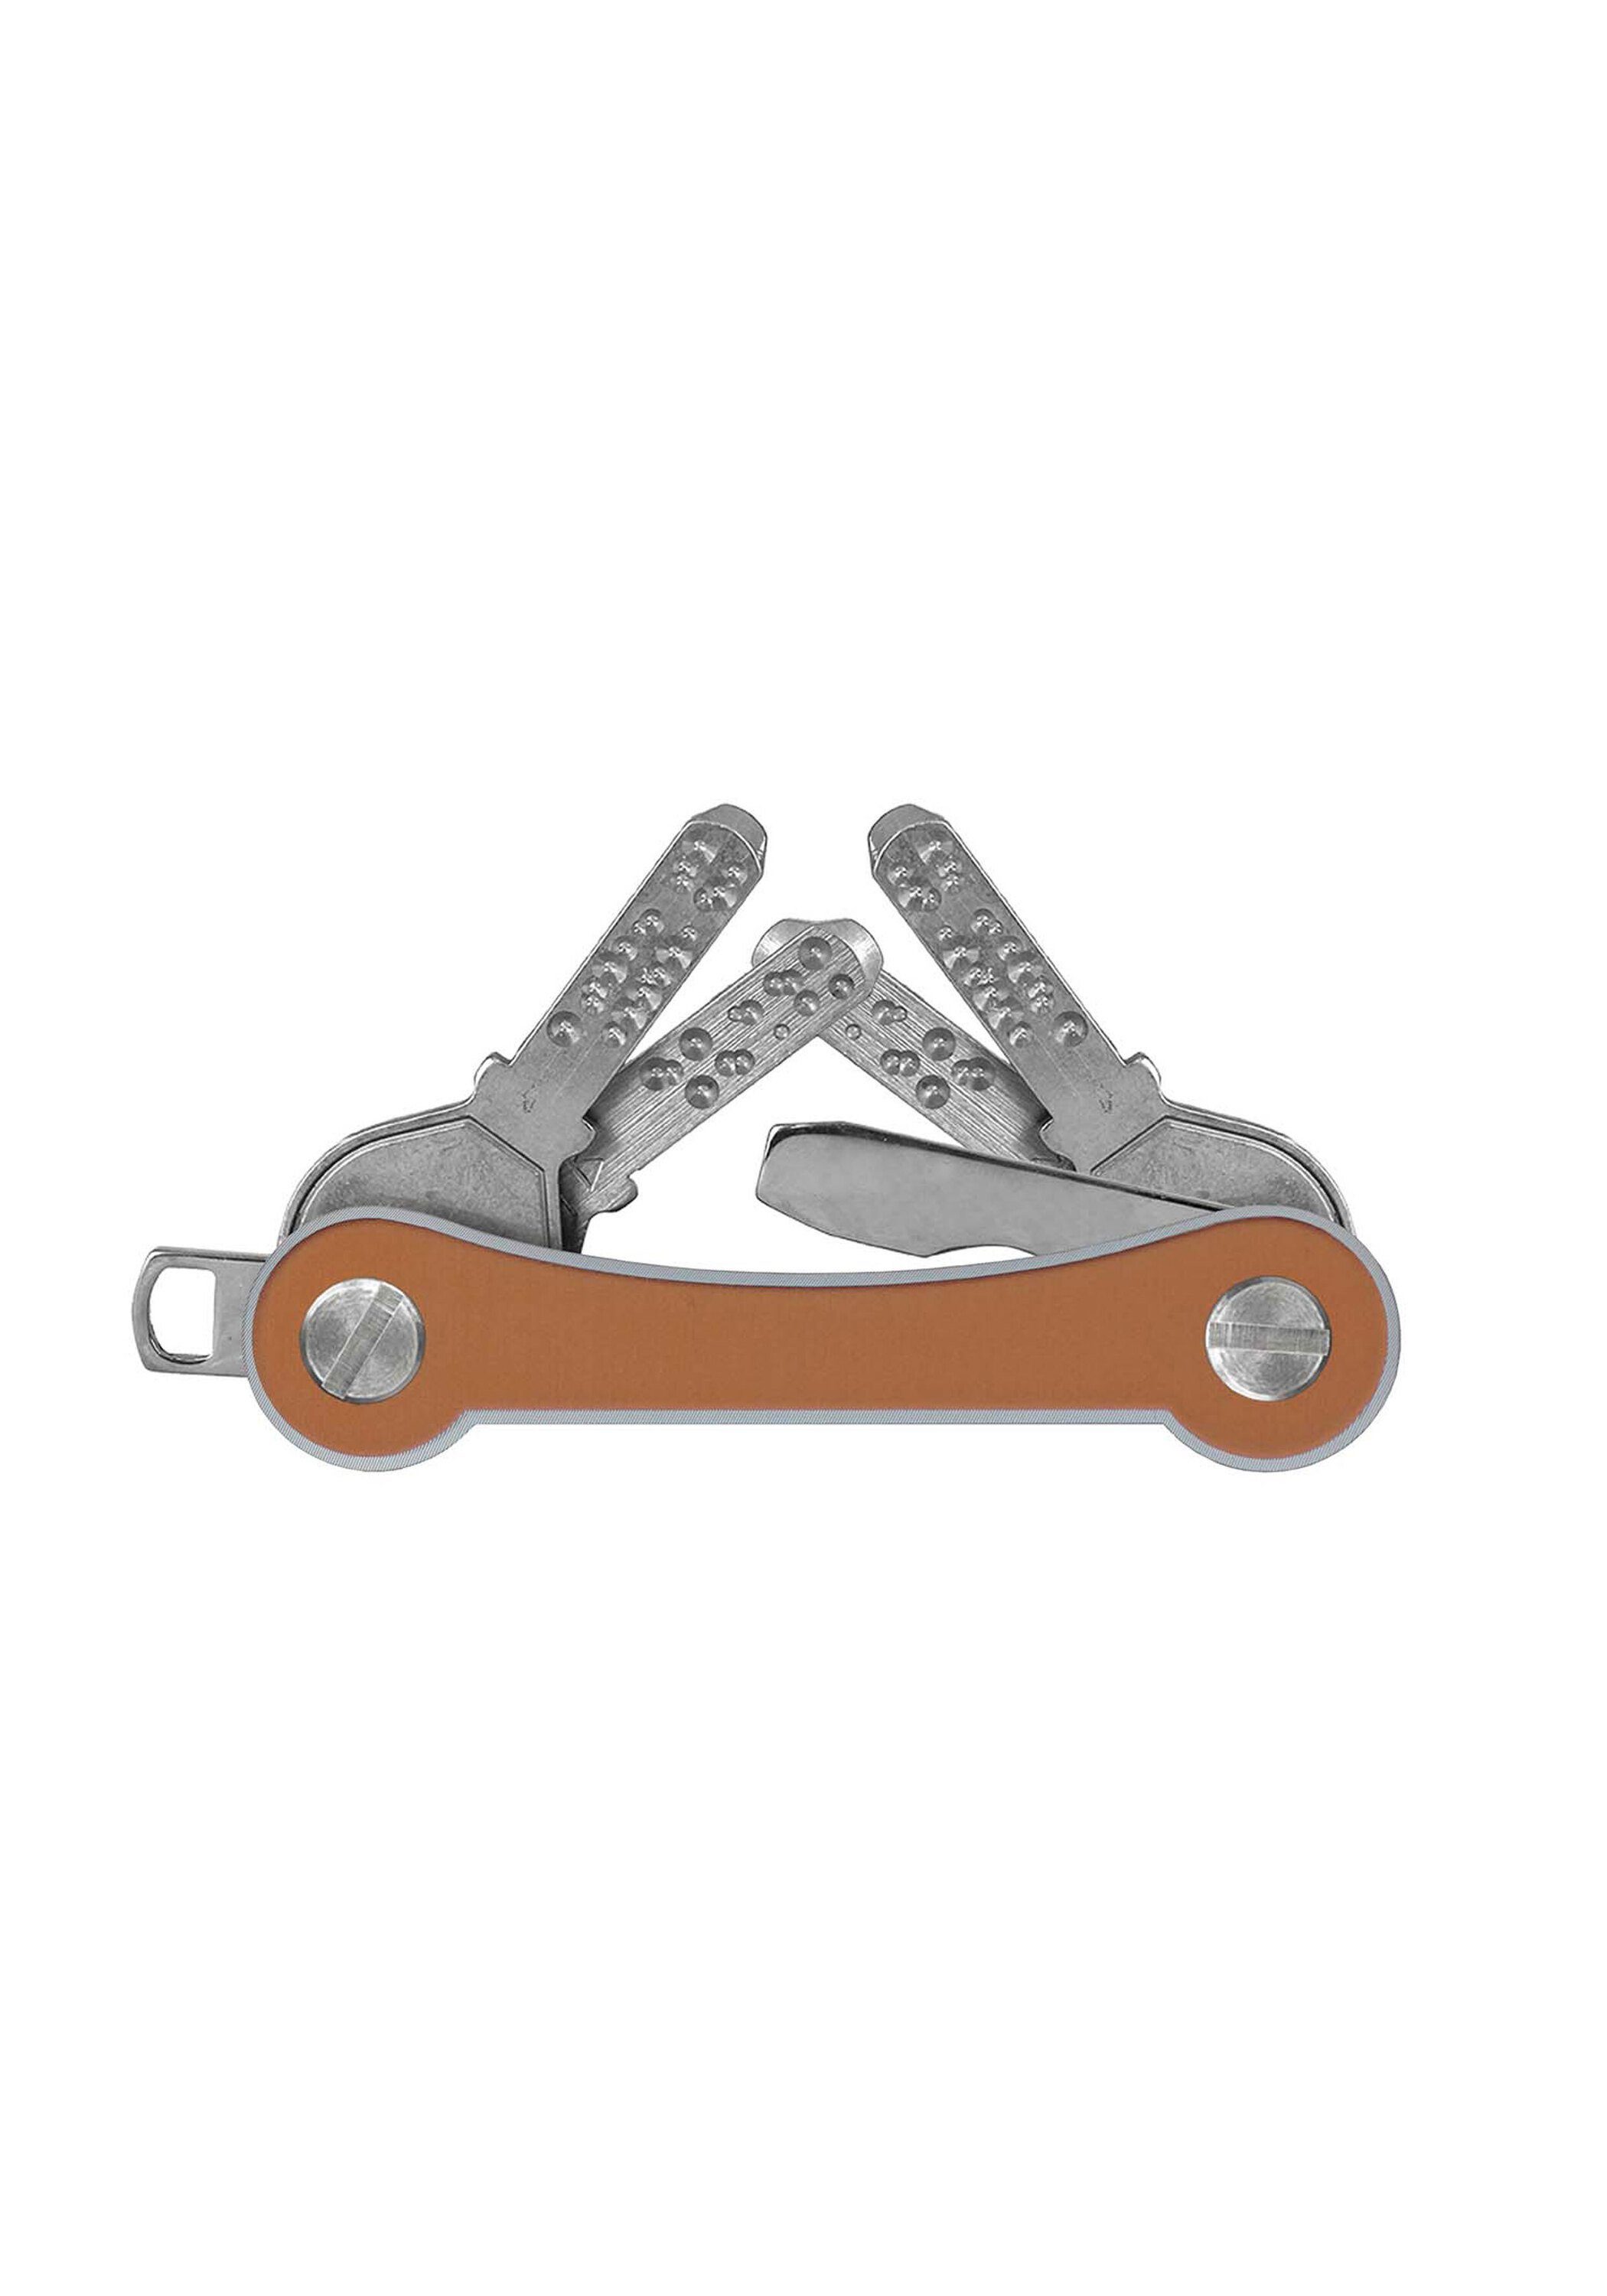 Schlüsselanhänger Made frame, SWISS goldfarben Aluminium keycabins